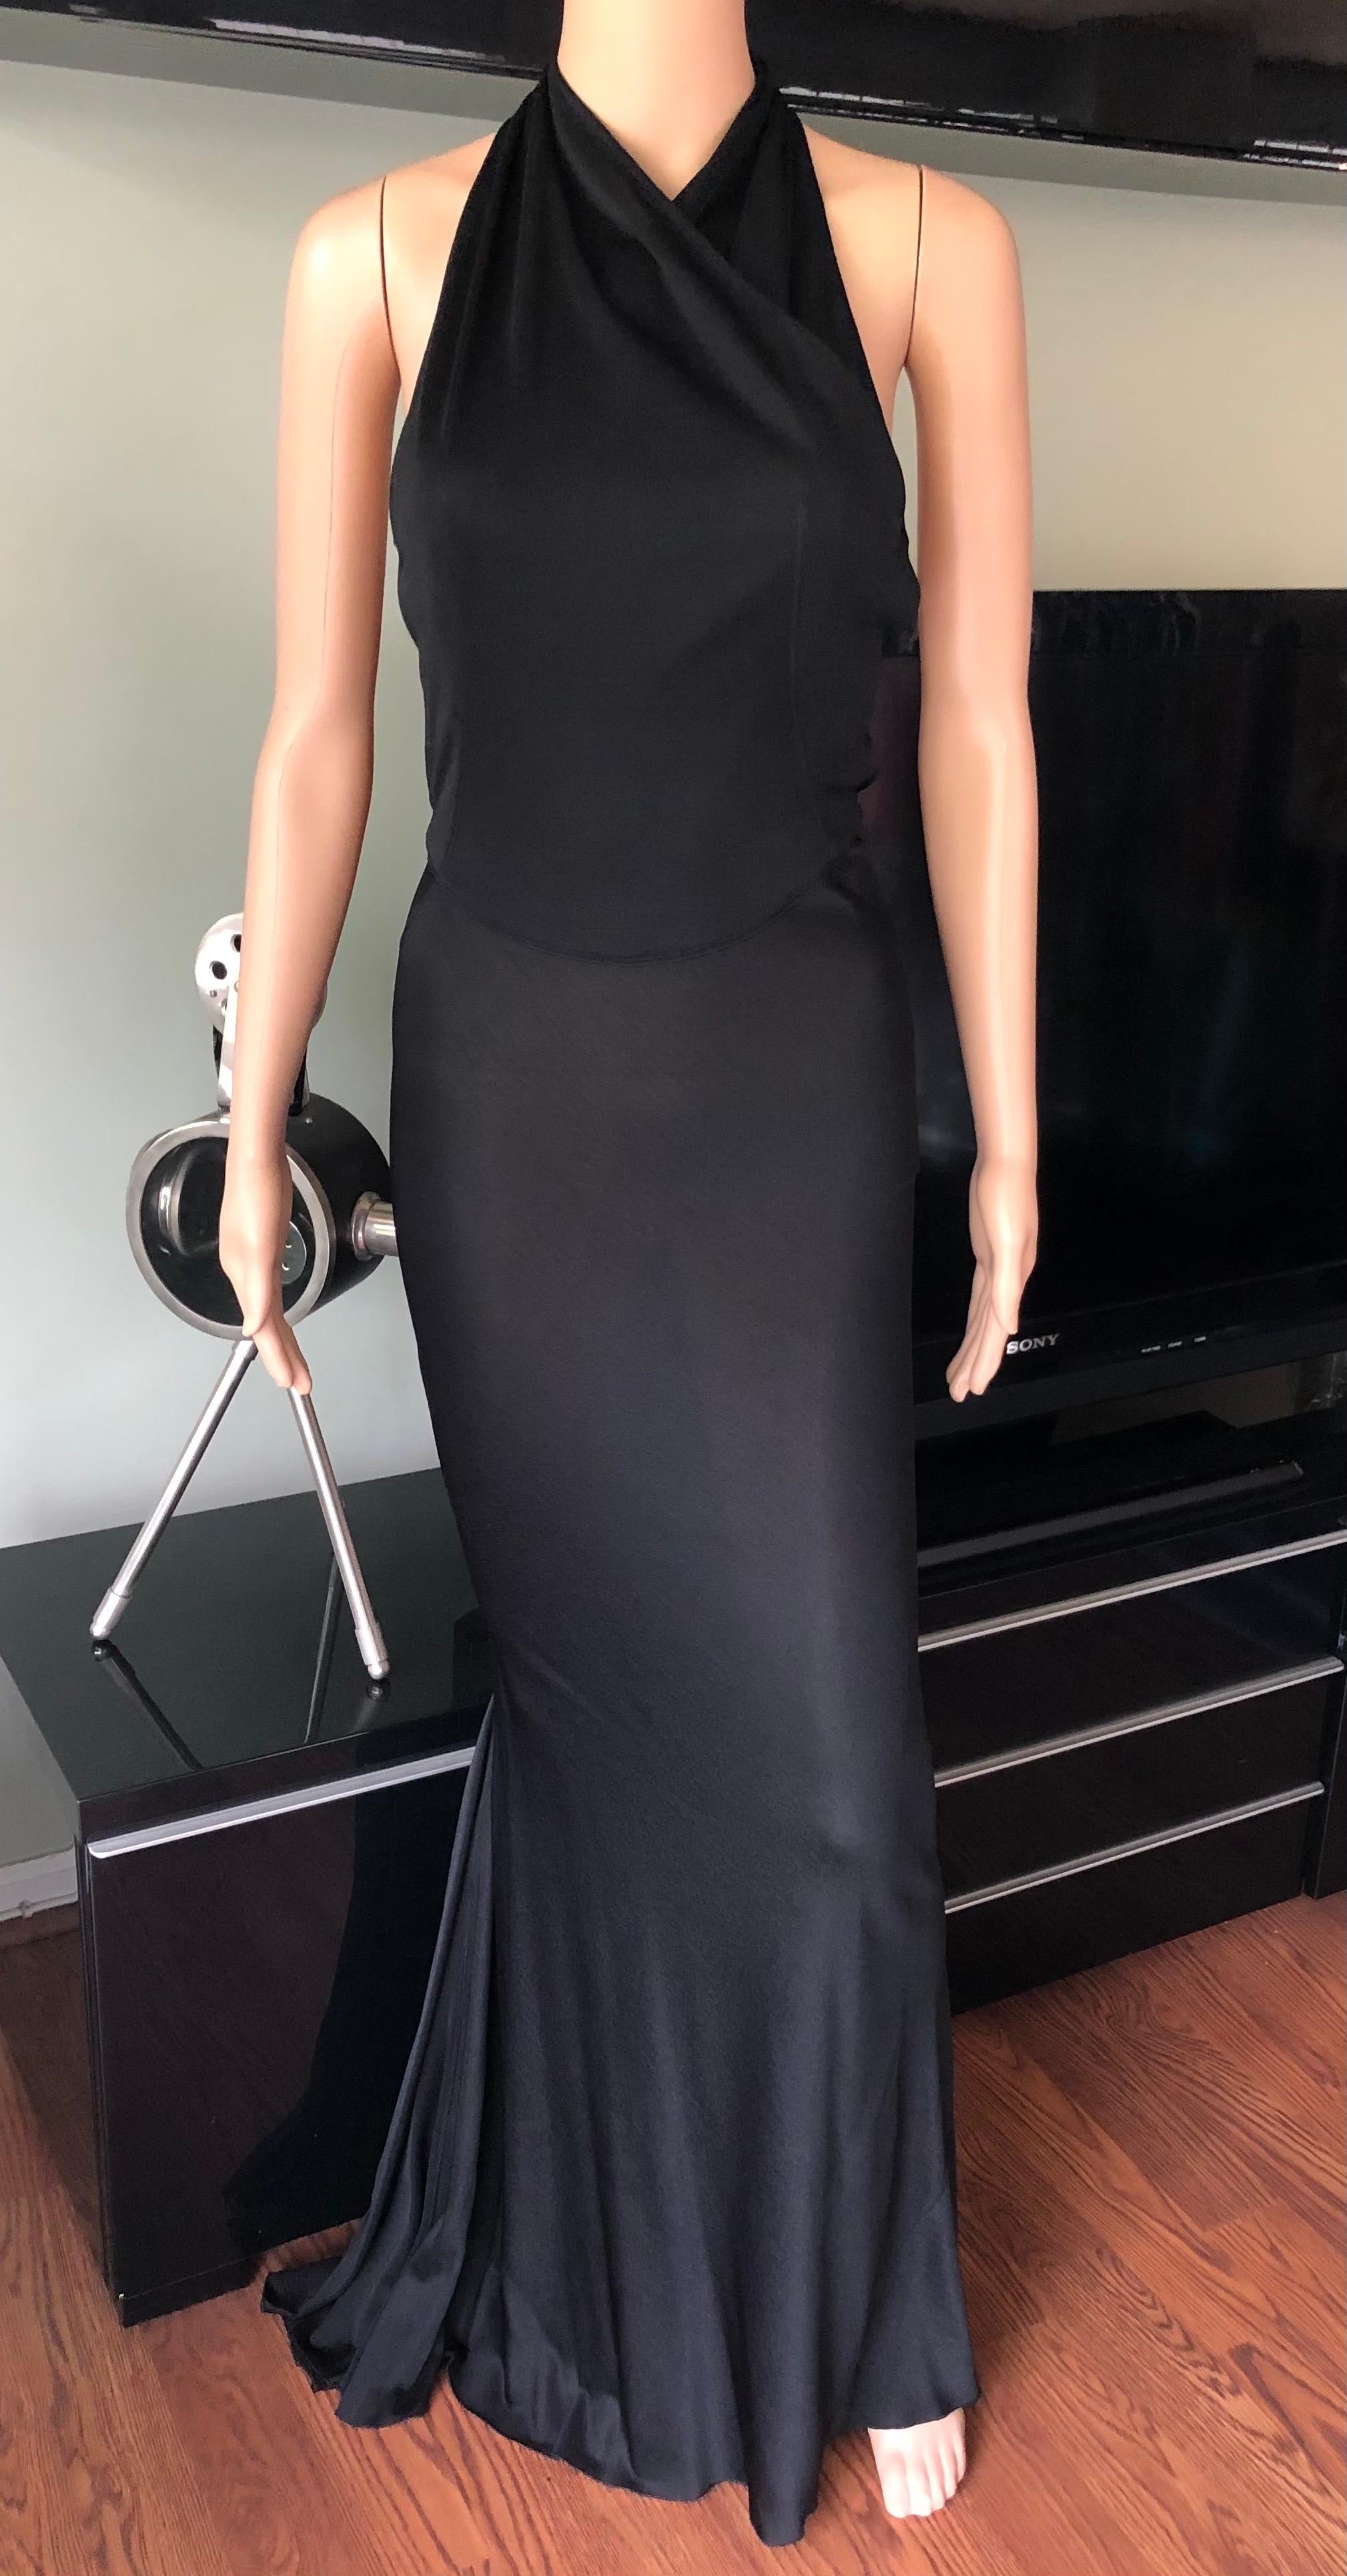 backless black formal dress